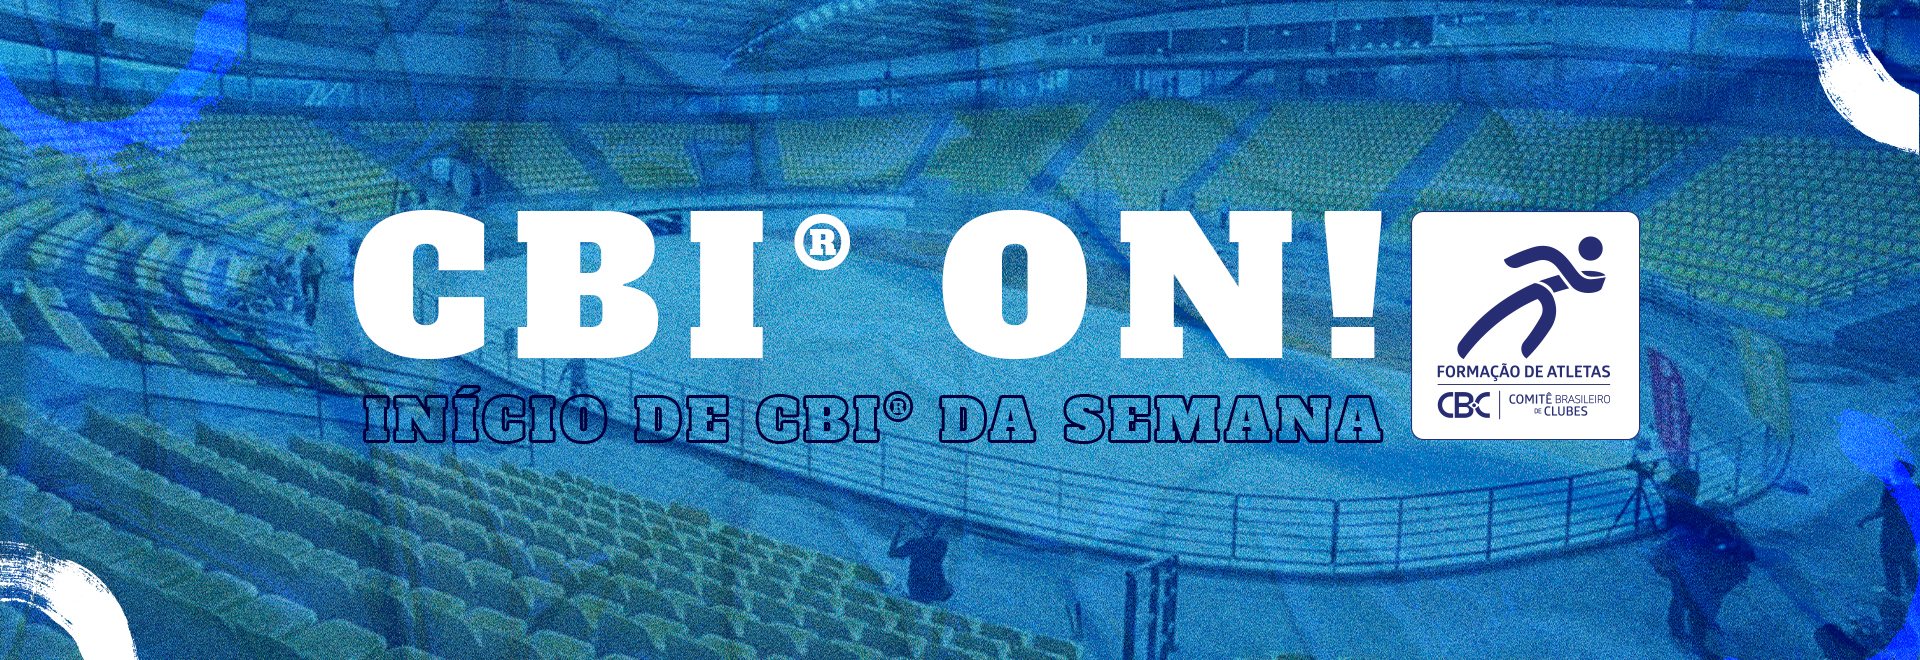 CBI® ON: Copa Super 8 de Basquetebol começa nessa semana 